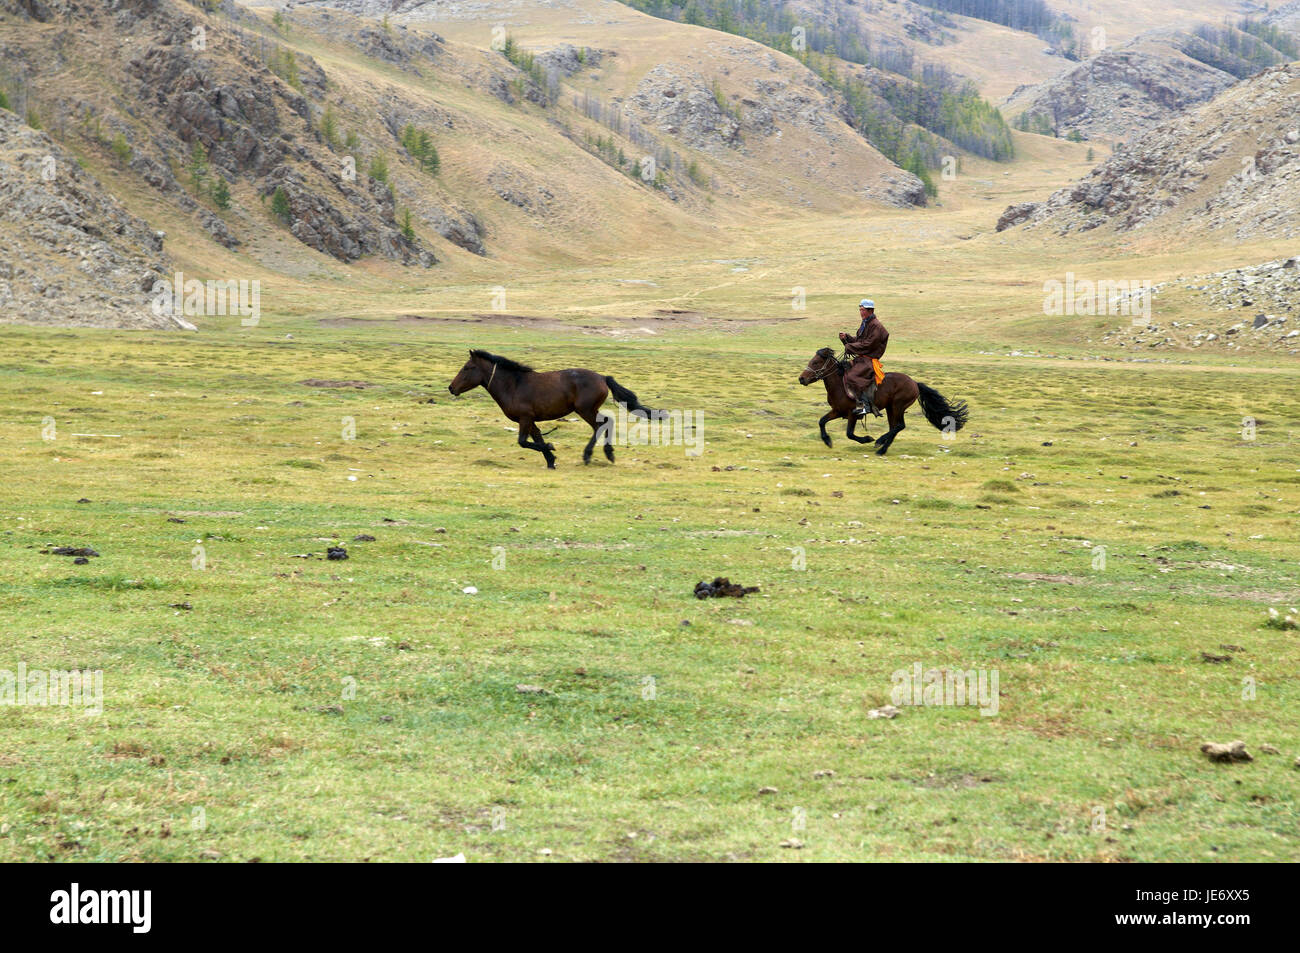 In Mongolia e in Asia centrale, Ovorkhangai provincia, storico Orkhon valley, patrimonio mondiale dell UNESCO, nomade, uomo, cavalli, cattura Foto Stock